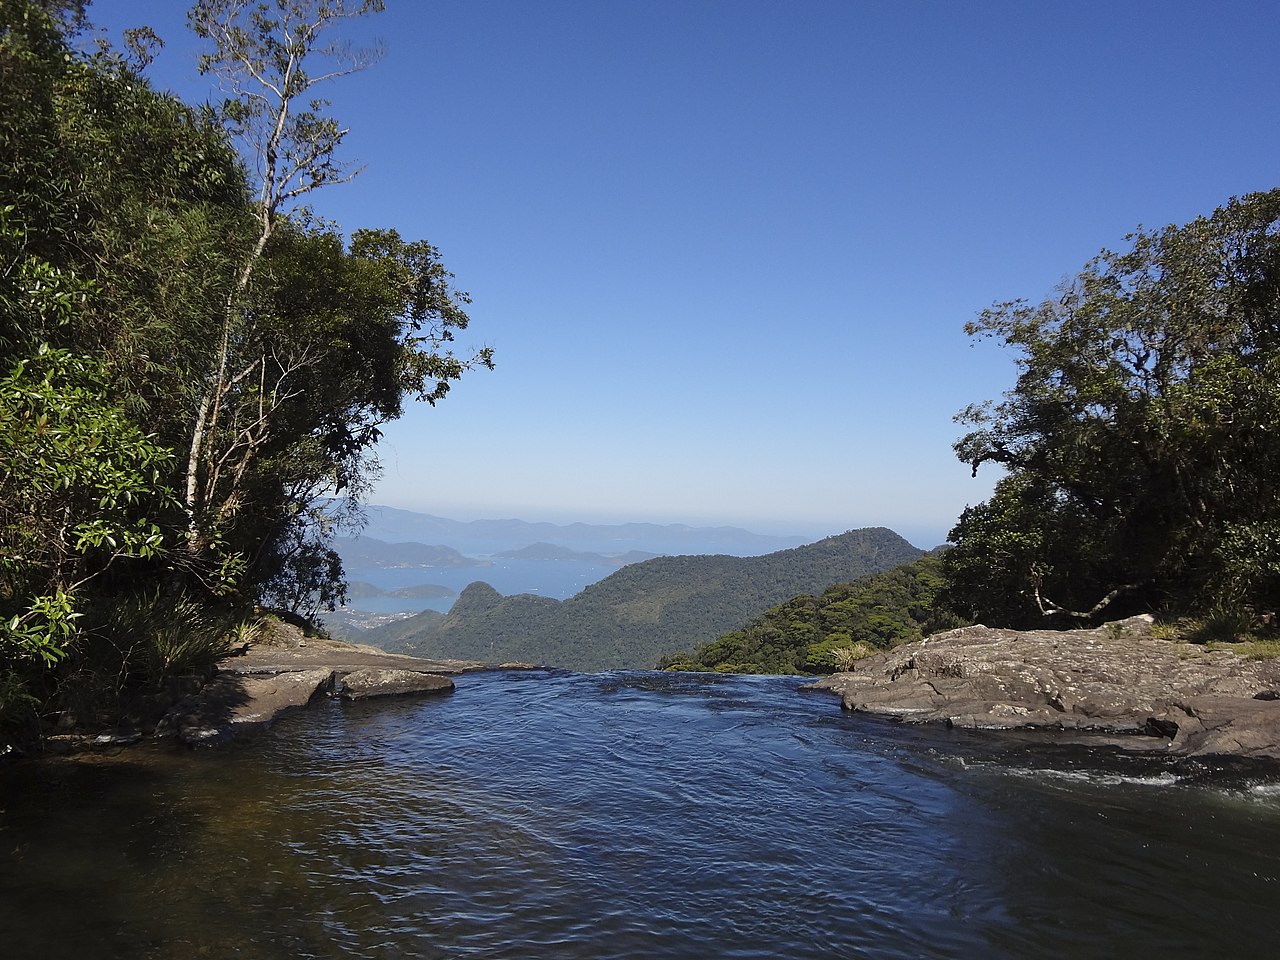 vista da Serra da Bocaina, em Bananal, com a Baía da Ilha Grande ao fundo e, à frente, um rio de águas límpidas que desemboca no que parece ser uma cachoeira, há uma margem pedregosa de ambos os lados com árvores verdes e o céu é azul